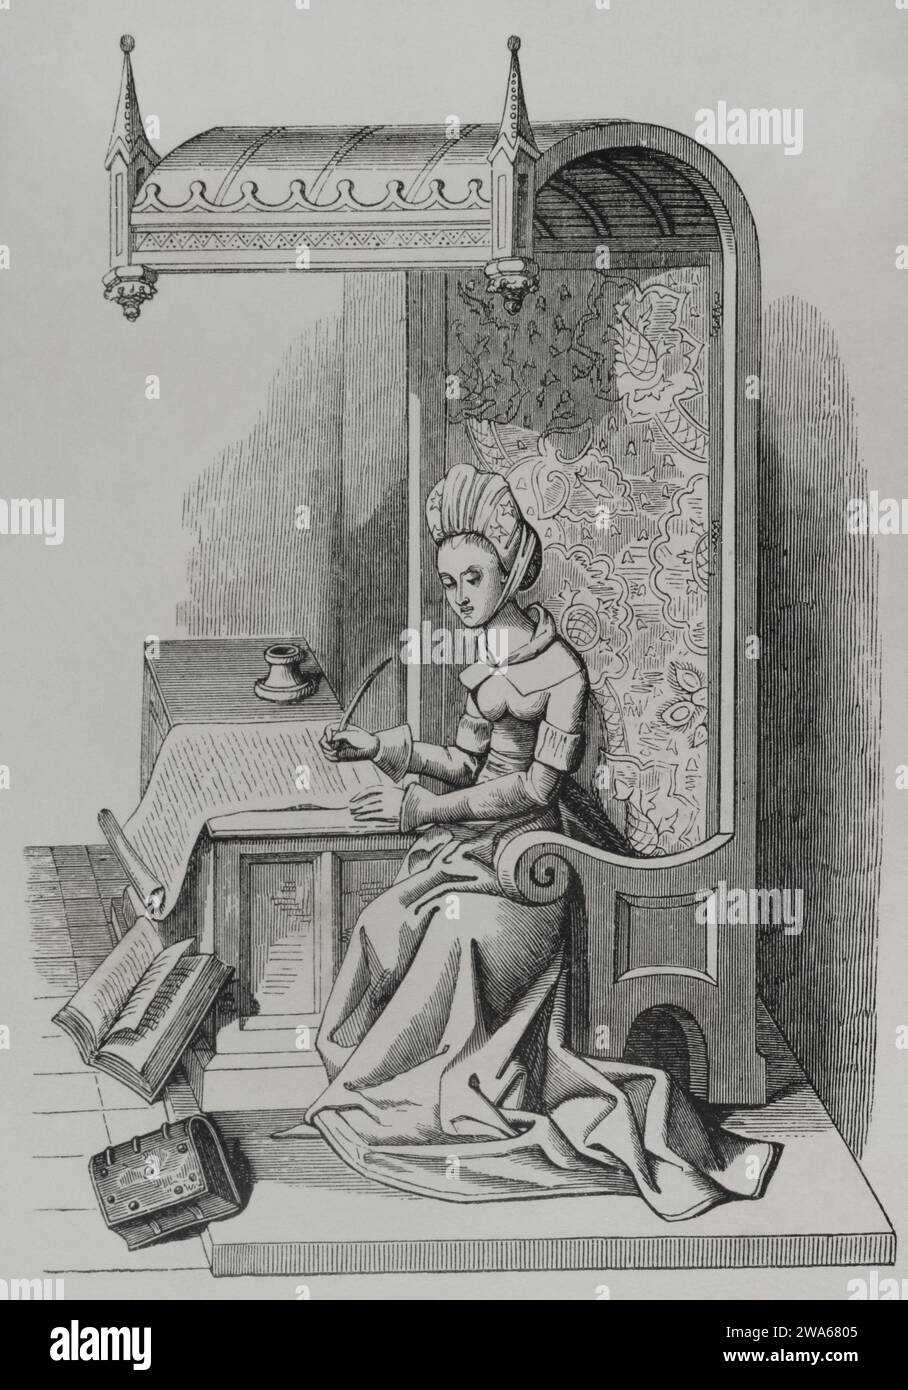 Christine de Pizan (1365-1430). French writer and philosopher born in Venice. Engraving after a miniature from the 15th century. 'Les Arts au Moyen Age et a l'Epoque de la Renaissance', by Paul Lacroix. Paris, 1877. Stock Photo